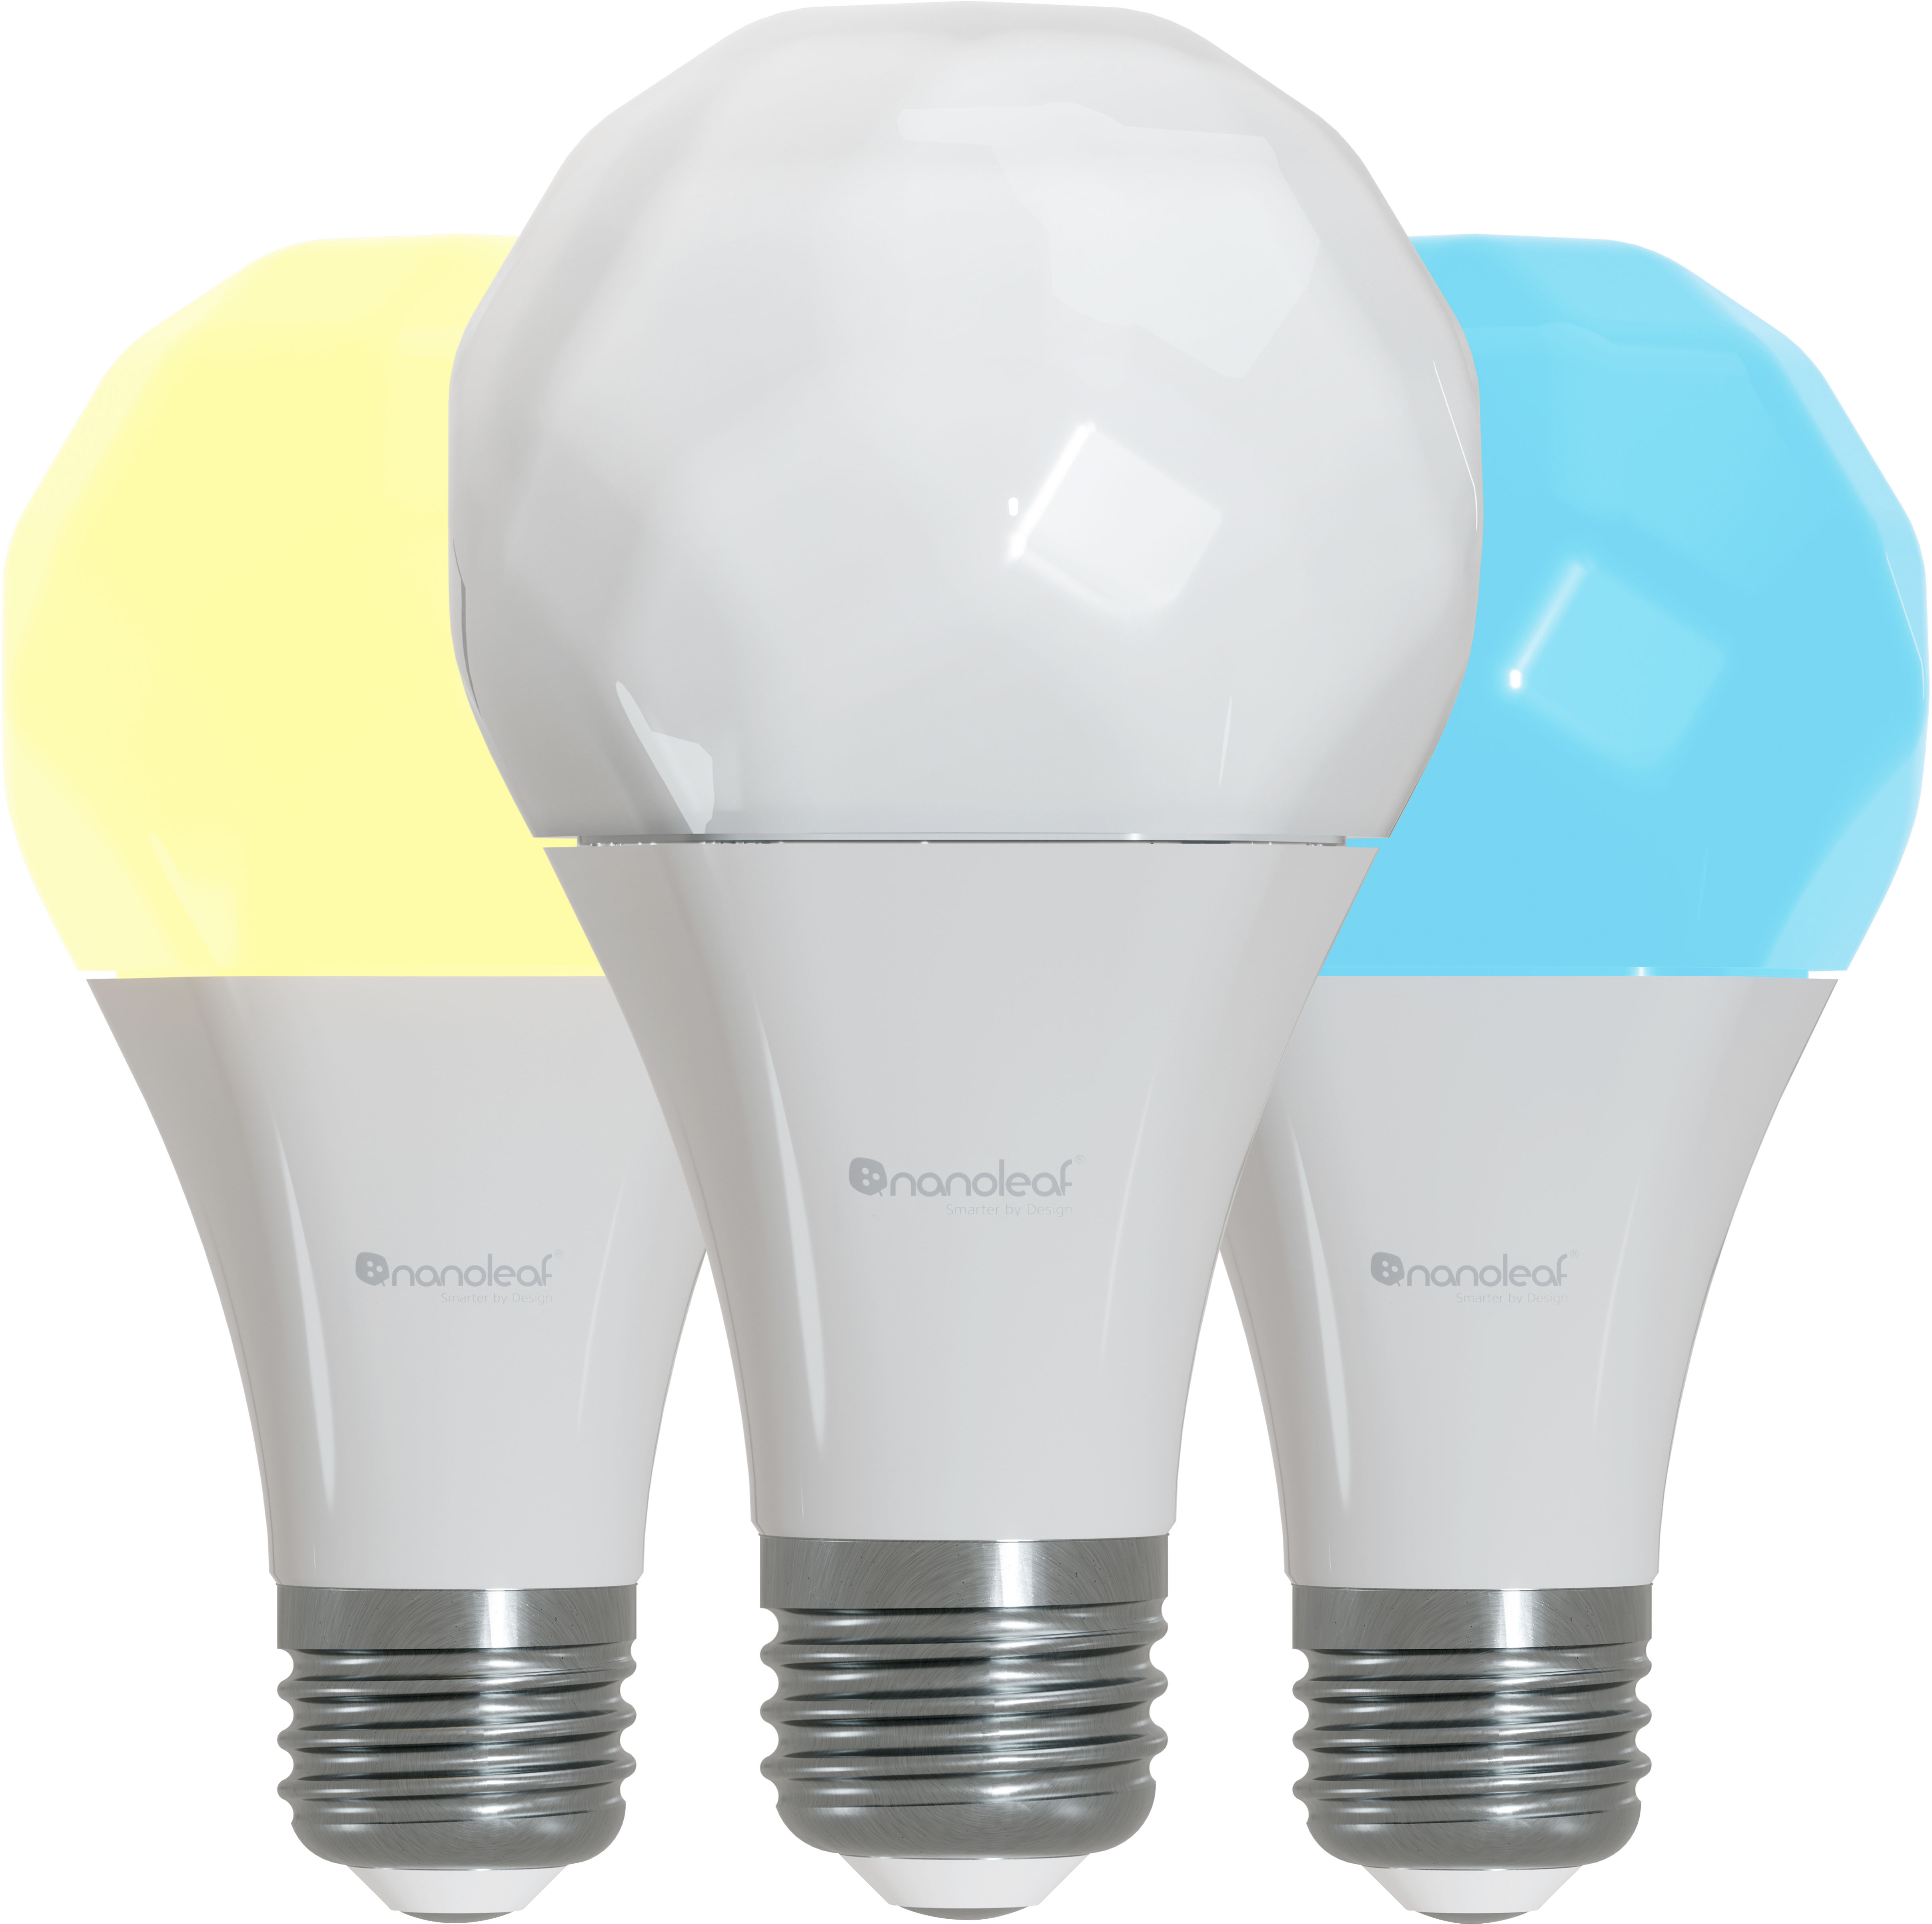 Nanoleaf Essentials A19 E27 smart bulb review: affordable smart lighting